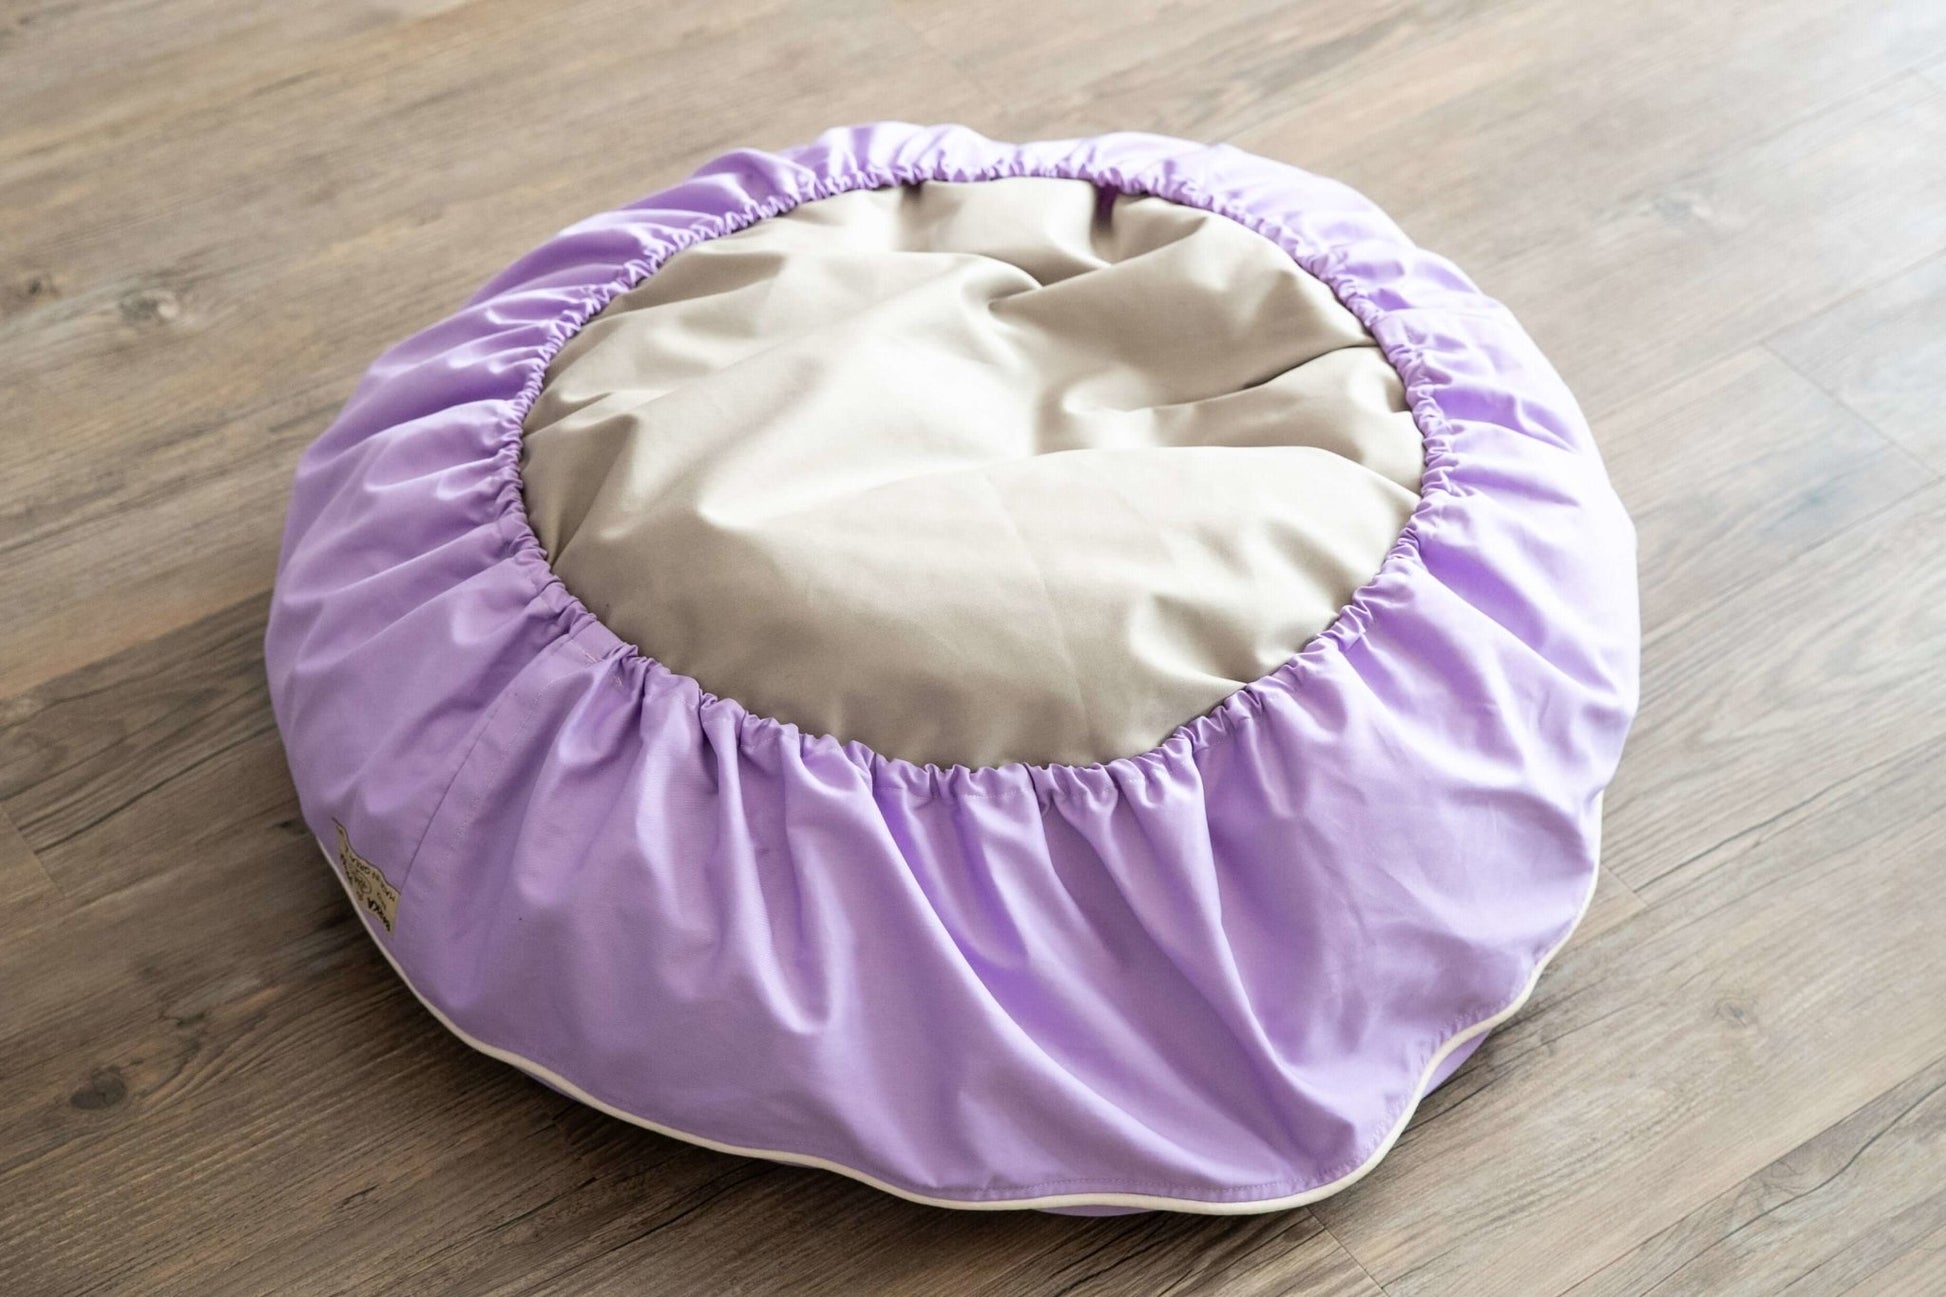 Barka Parka Dog Bed - Lilac and cream piping - Barka Parka Dog Beds